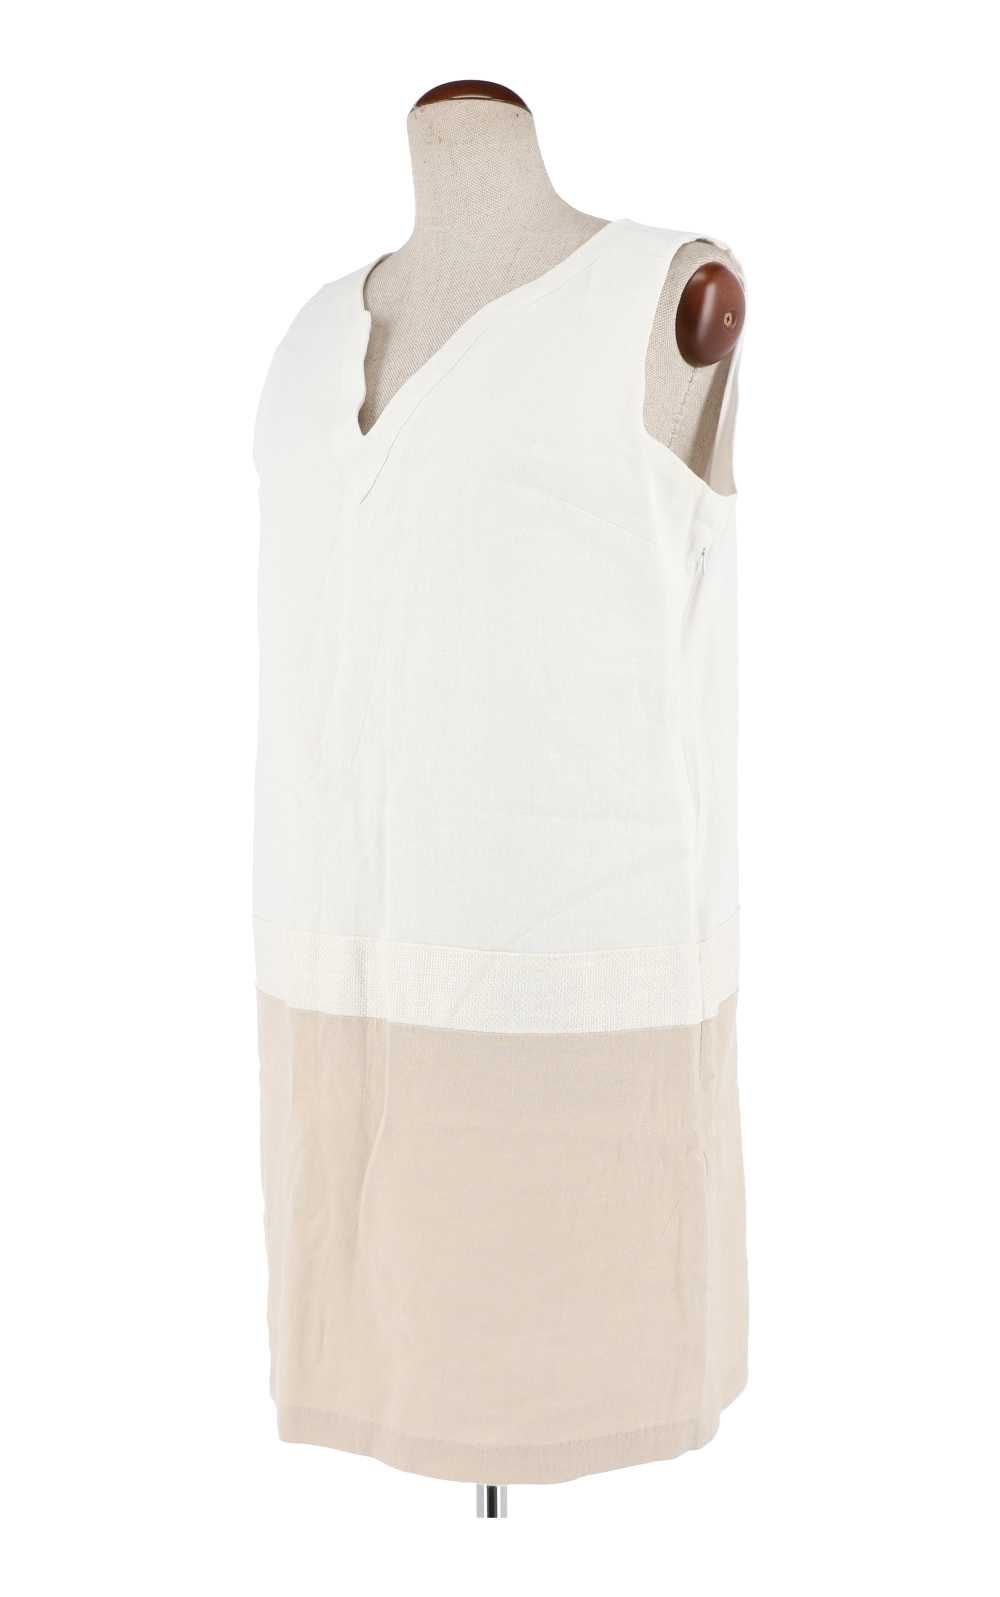 Biała sukienka marki Phildar, rozmiar 46